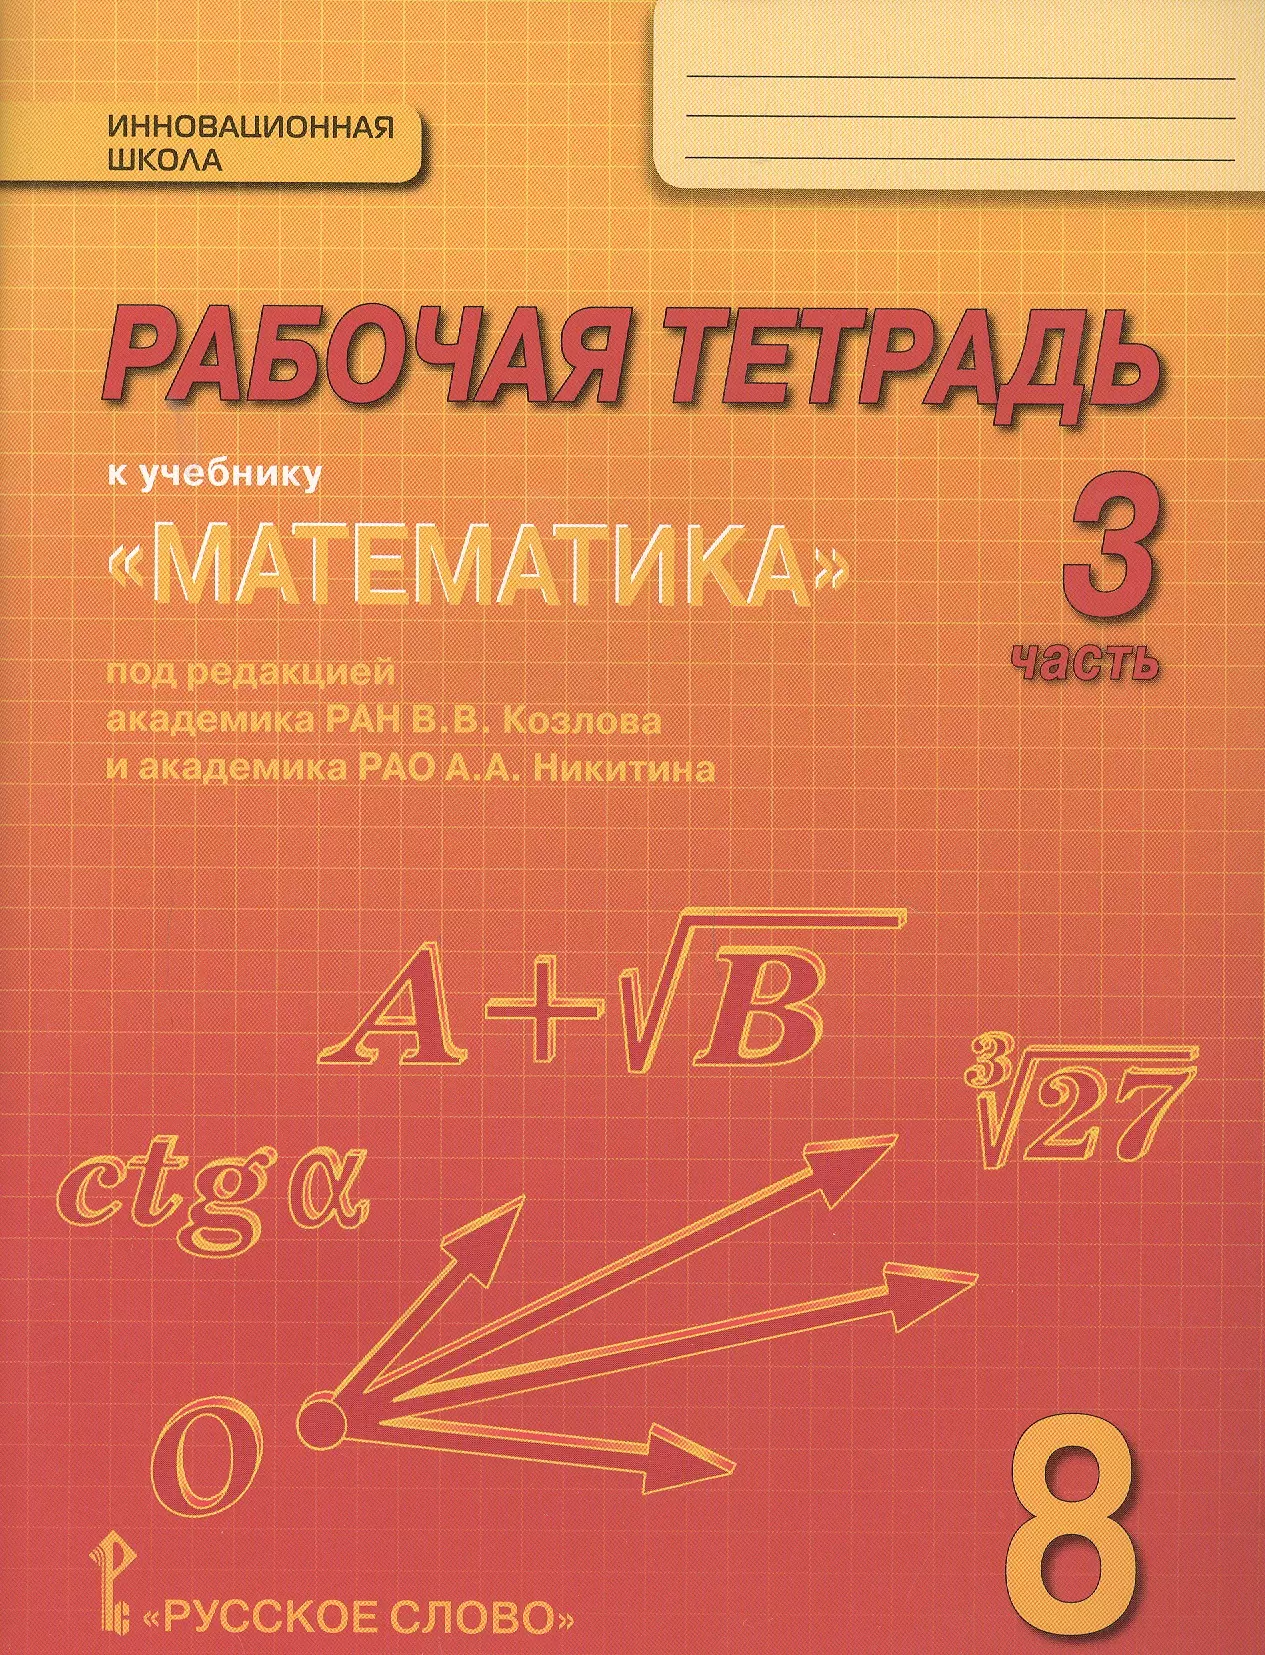 Рабочая тетрадь к учебнику Математика: алгебра и геометрия для 8 класса общеобразовательных организаций. В 4 частях. Часть 3